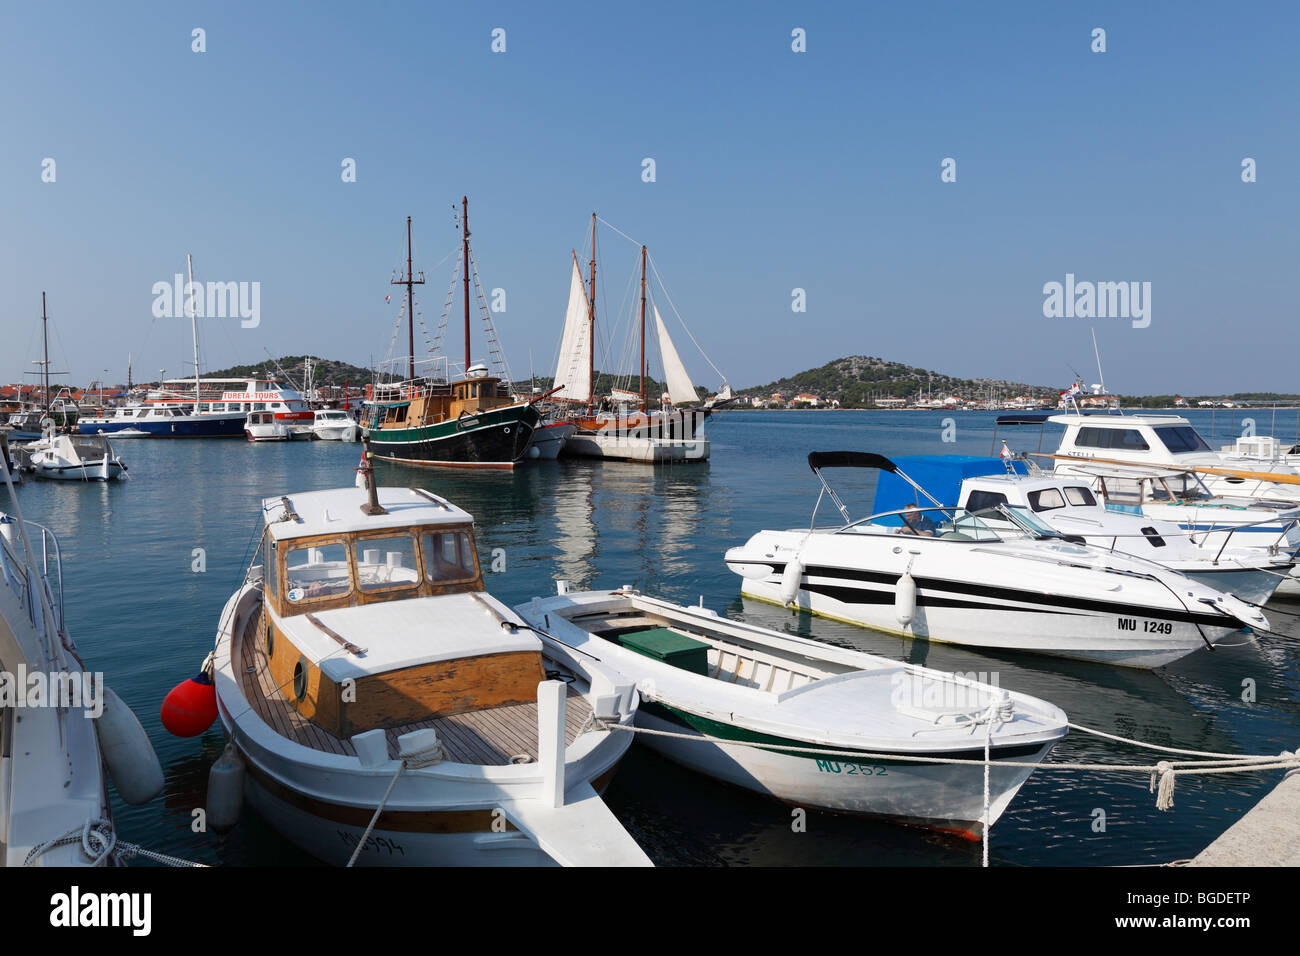 Port of Murter, Murter island, Dalmatia, Adriatic Sea, Croatia, Europe Stock Photo